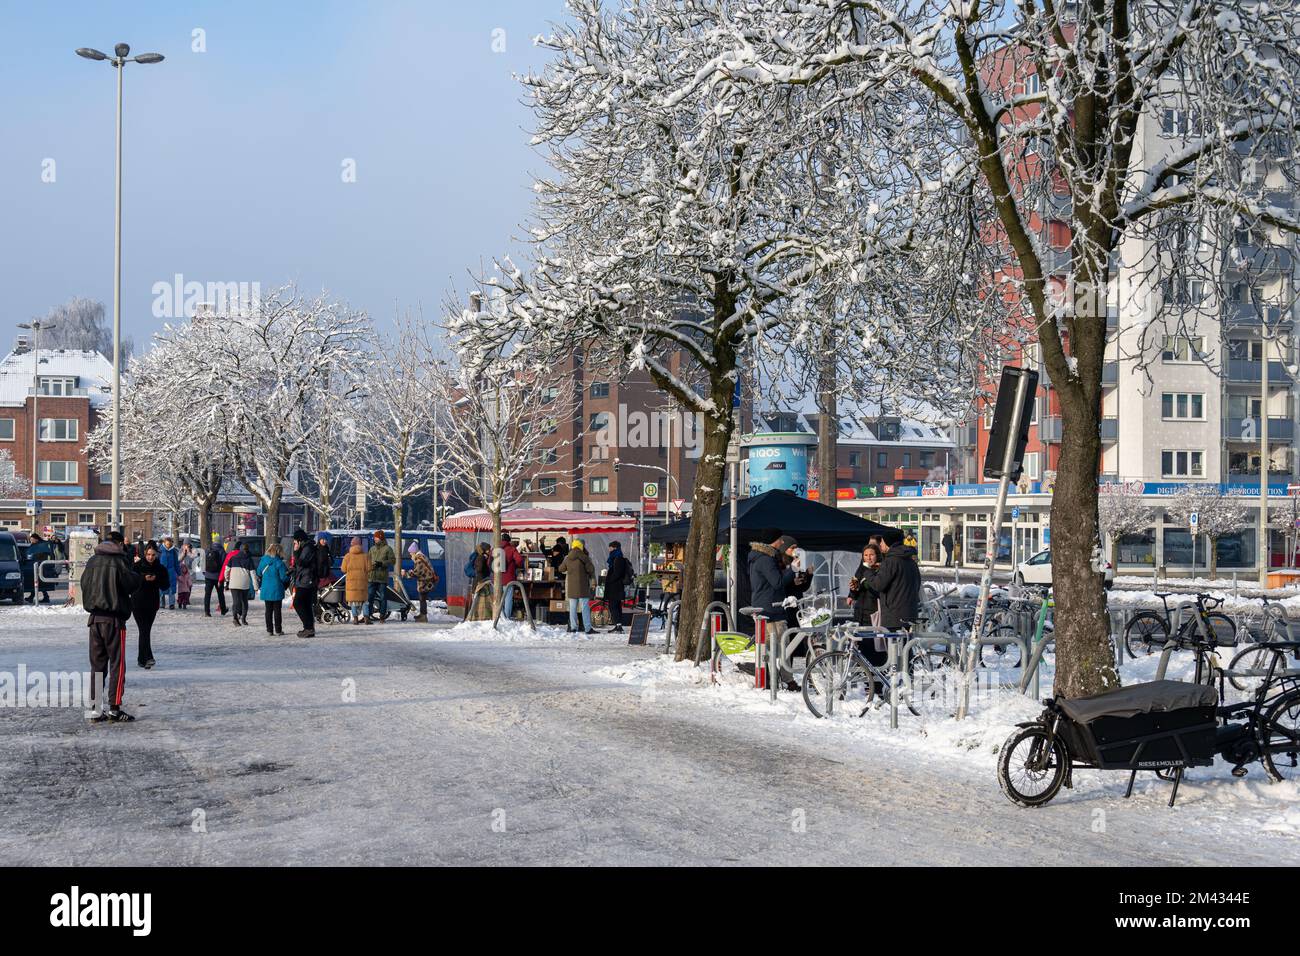 Auf dem Wochenmarkt am Exerzierplatz in Kiel werden im Winter wärmende Getränke gereicht Foto Stock